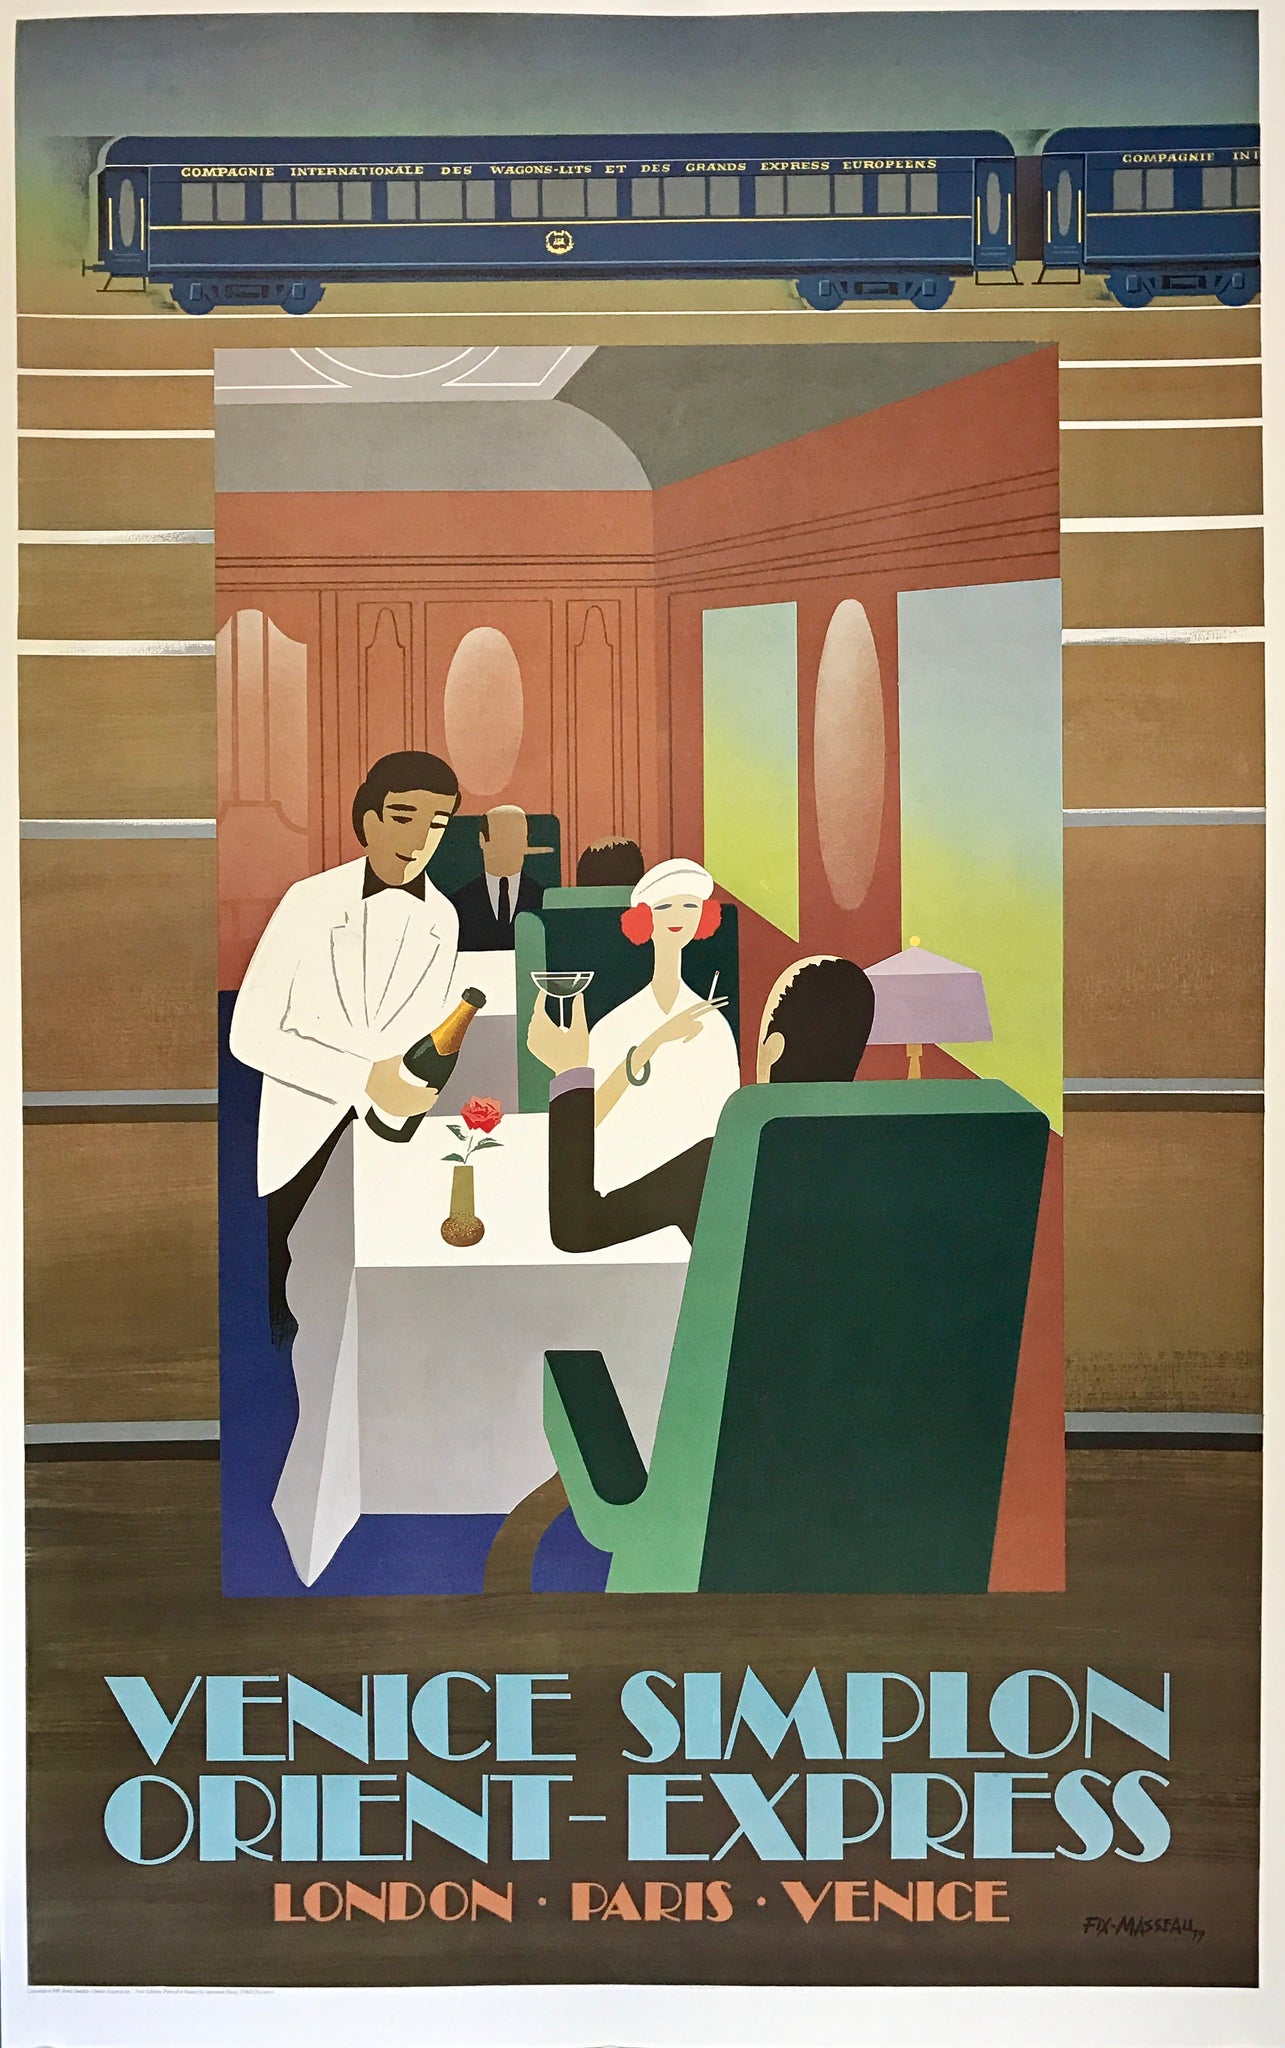 Affiche  First Edition Wagon restaurant Fix-Masseau, 1981  Très belle affiche réalisée par Fix Masseau mettant en scène un couple mangeant dans un wagon-restaurant.  Le serveur propose du champagne pendant que la femme fume une cigarette.